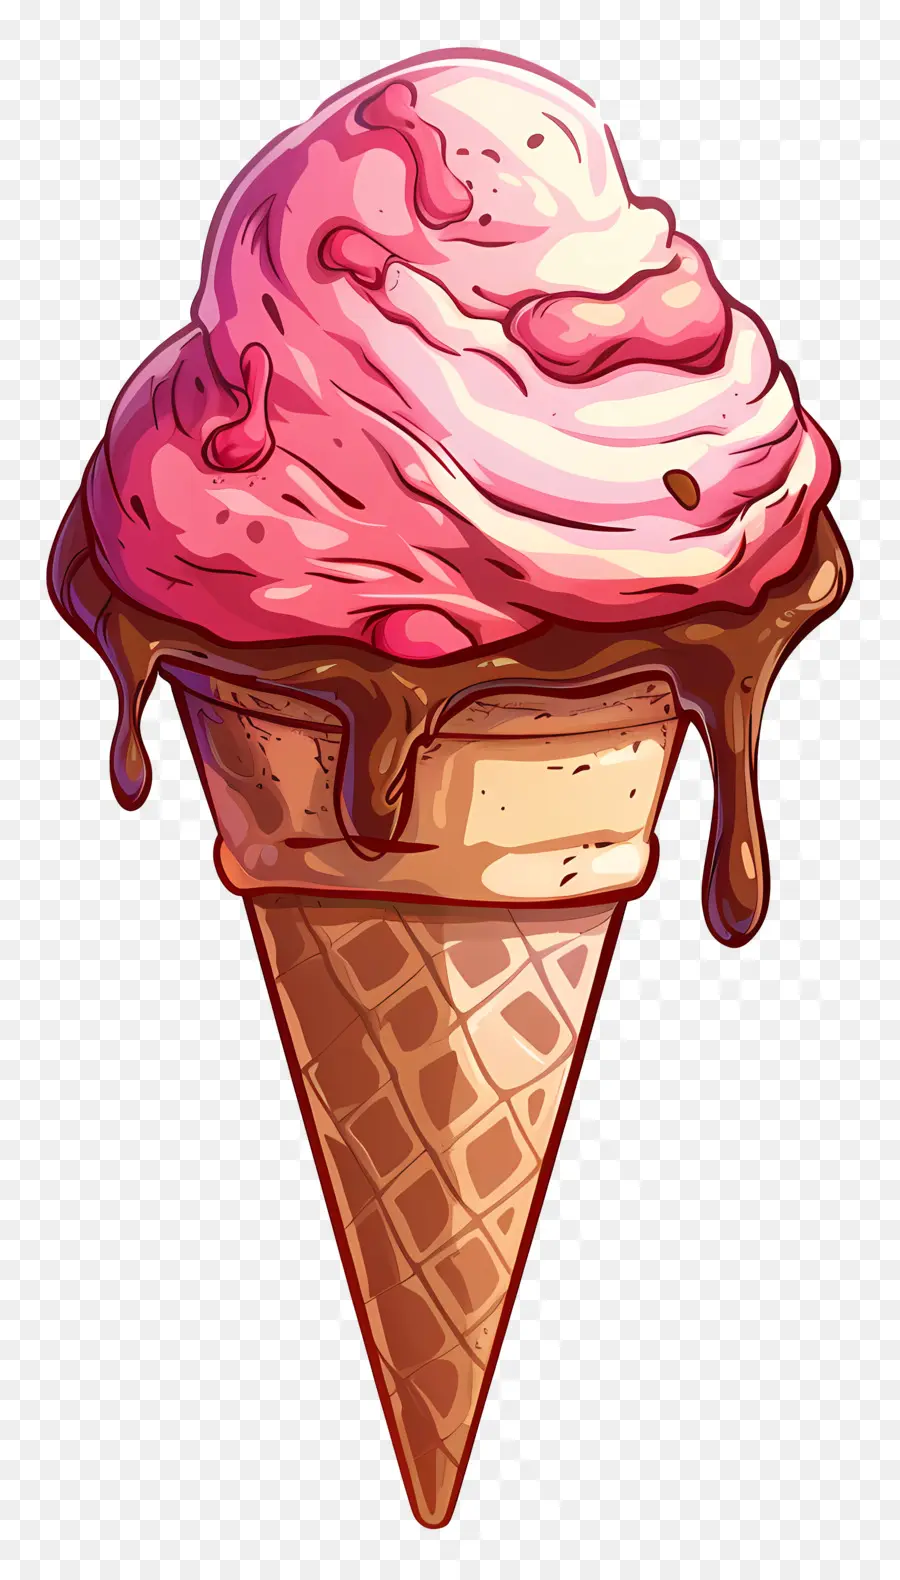 Kem hoạt hình kem hoạt hình kem hình nón màu hồng sô cô la xoáy nhỏ giọt kem wafer hình nón - Phim hoạt hình kem hình nón với xoáy màu hồng